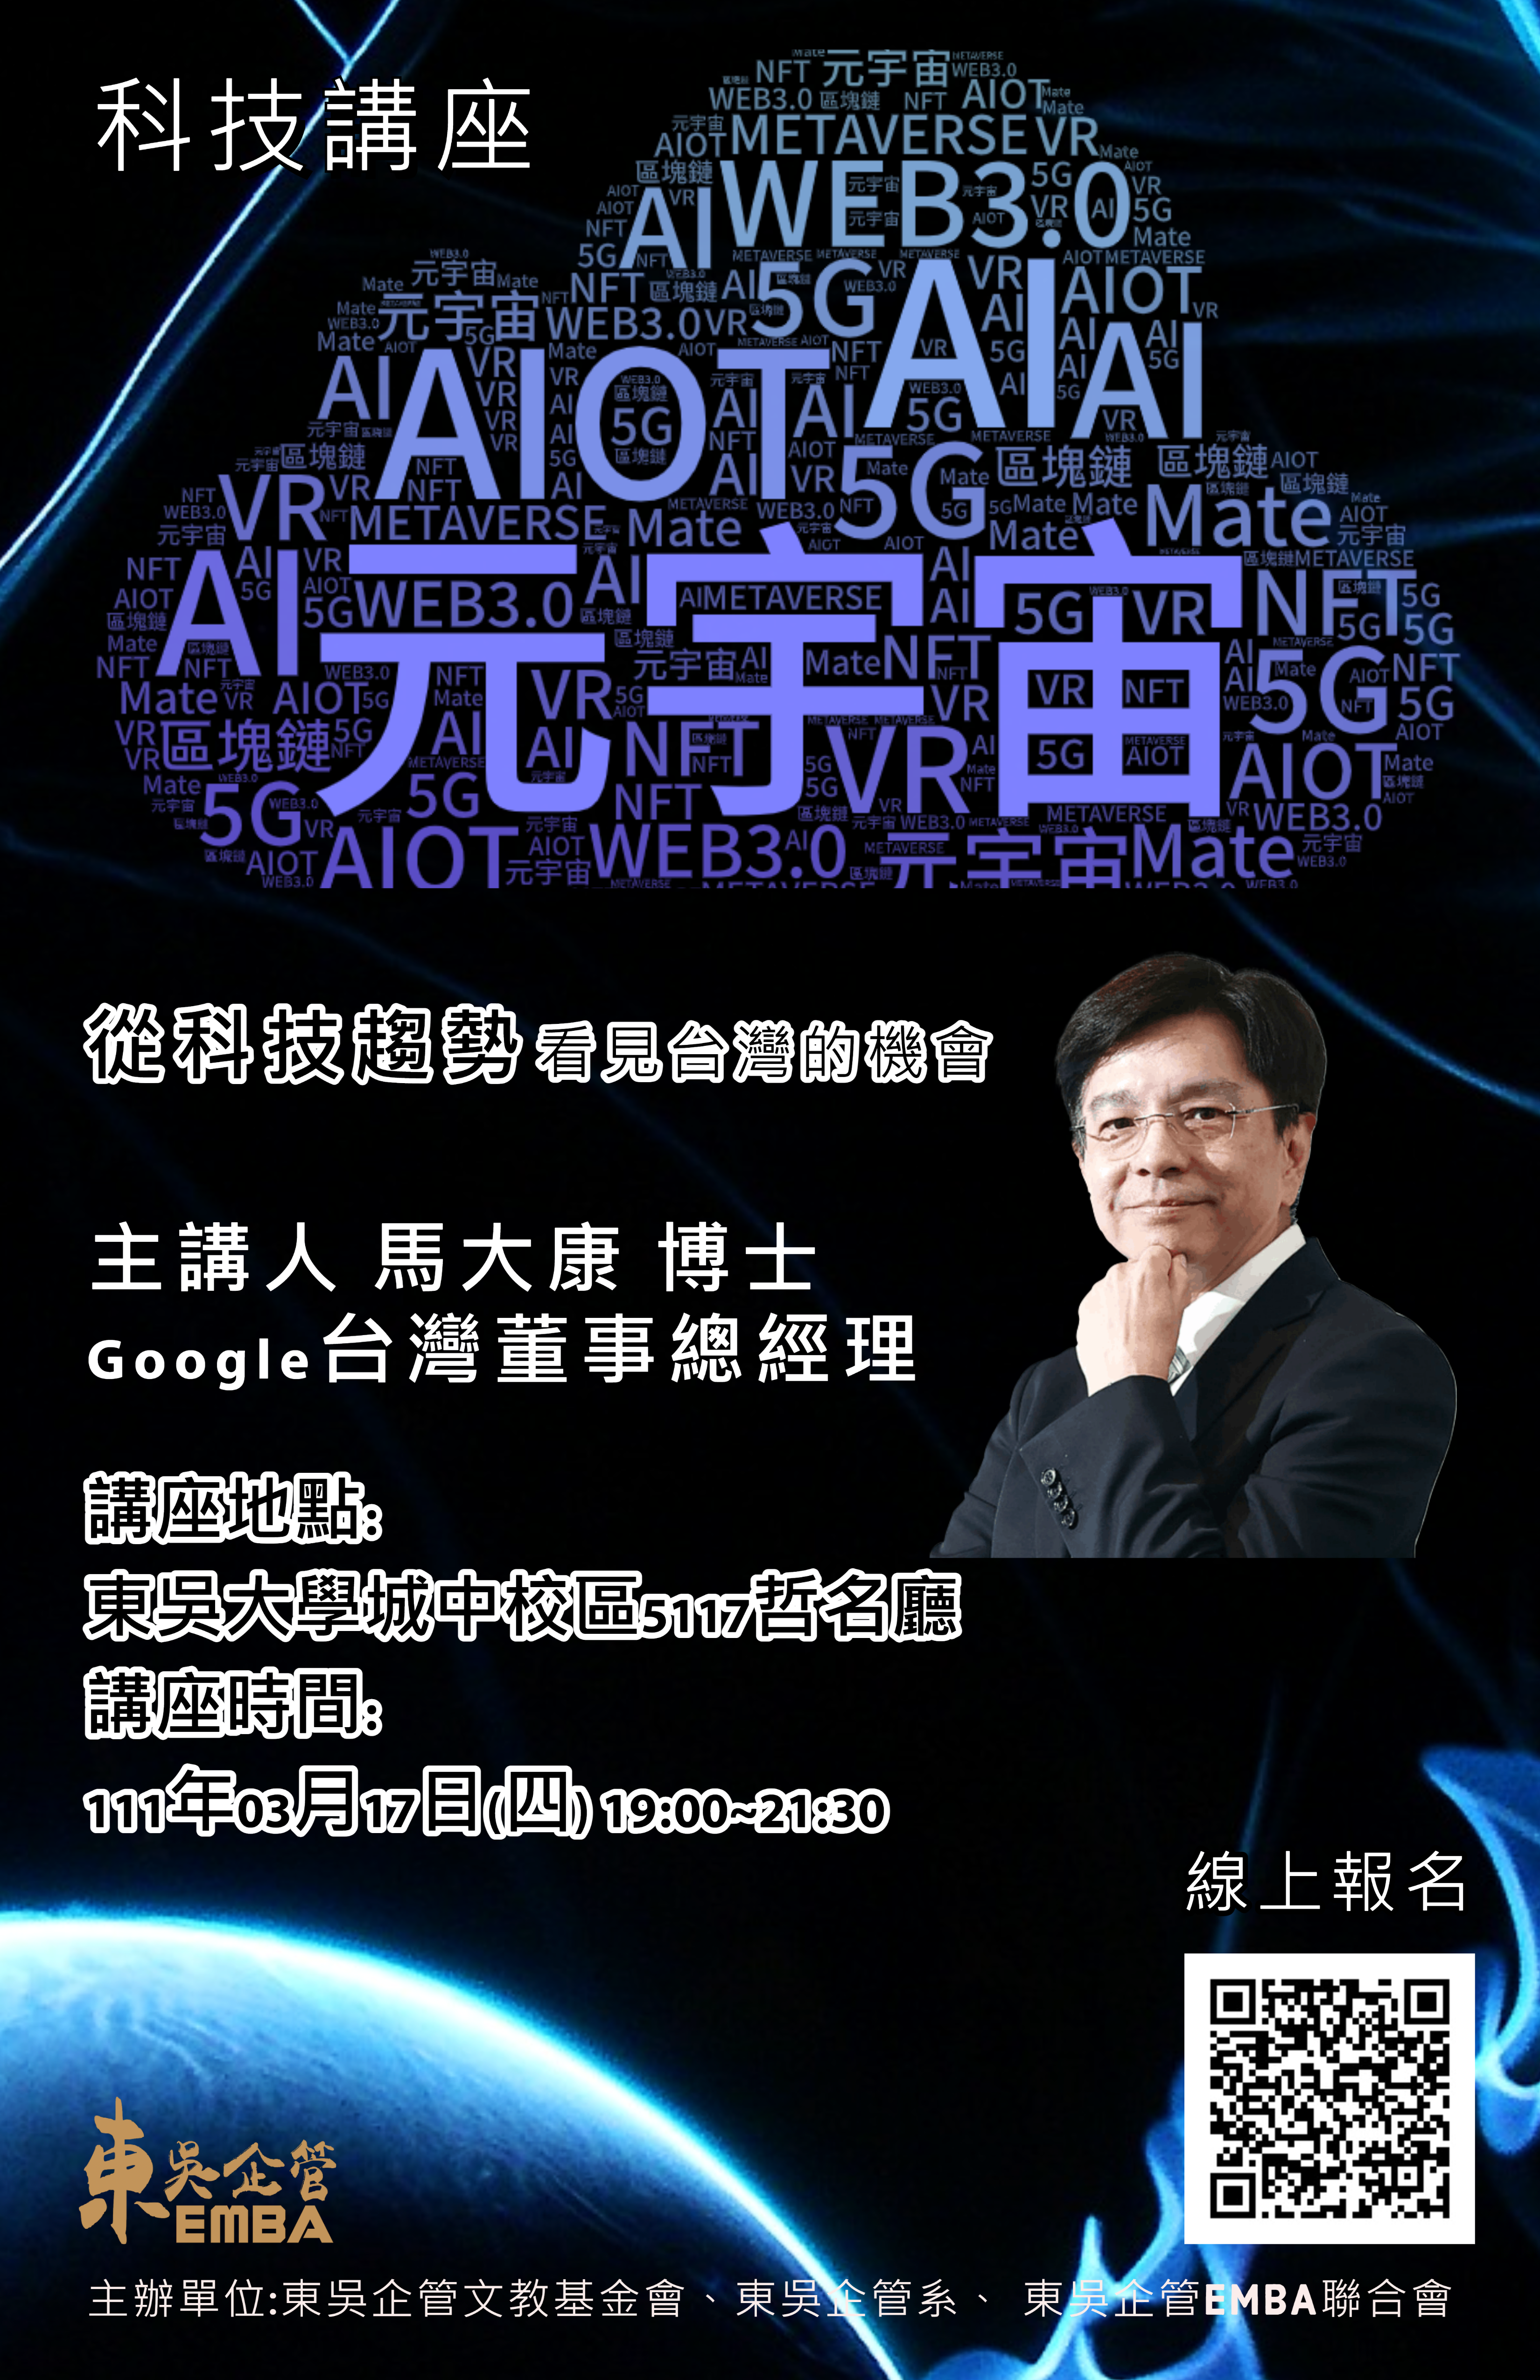 從科技趨勢看見台灣的機會AI + 5G + AIOT + Web 3.0 + 元宇宙